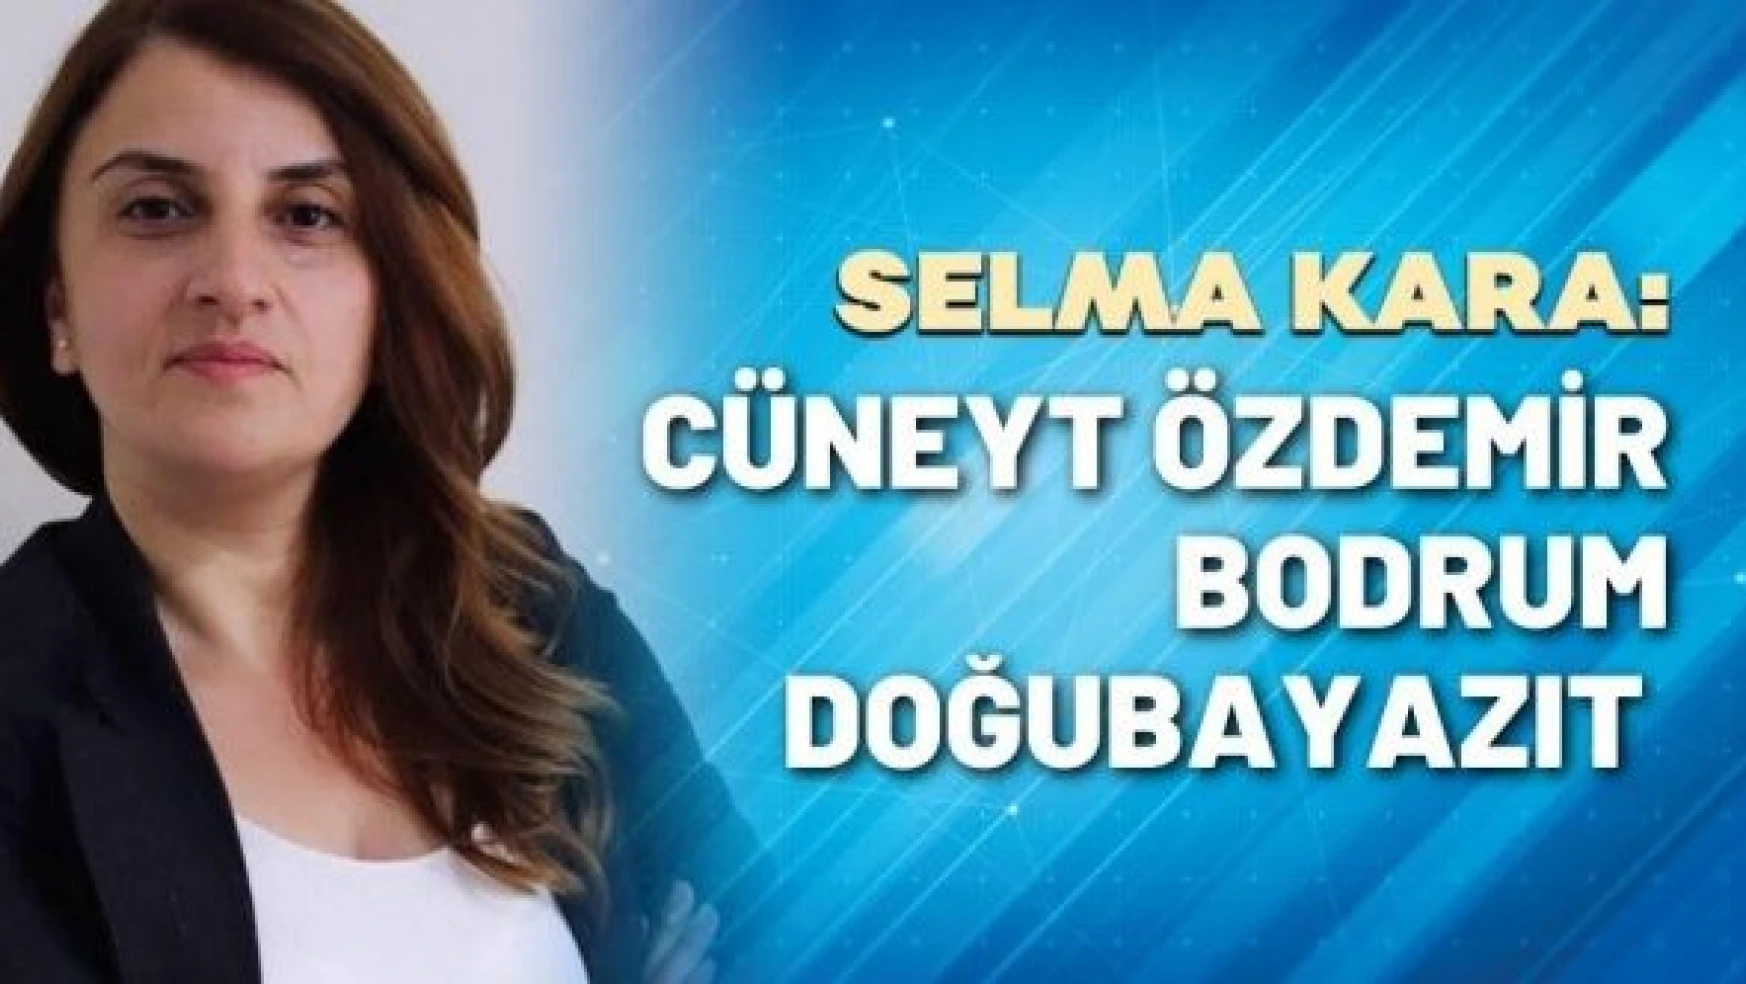 Gazeteci Selma Kara yazdı: Cüneyt Özdemir, Bodrum, Doğubayazıt…